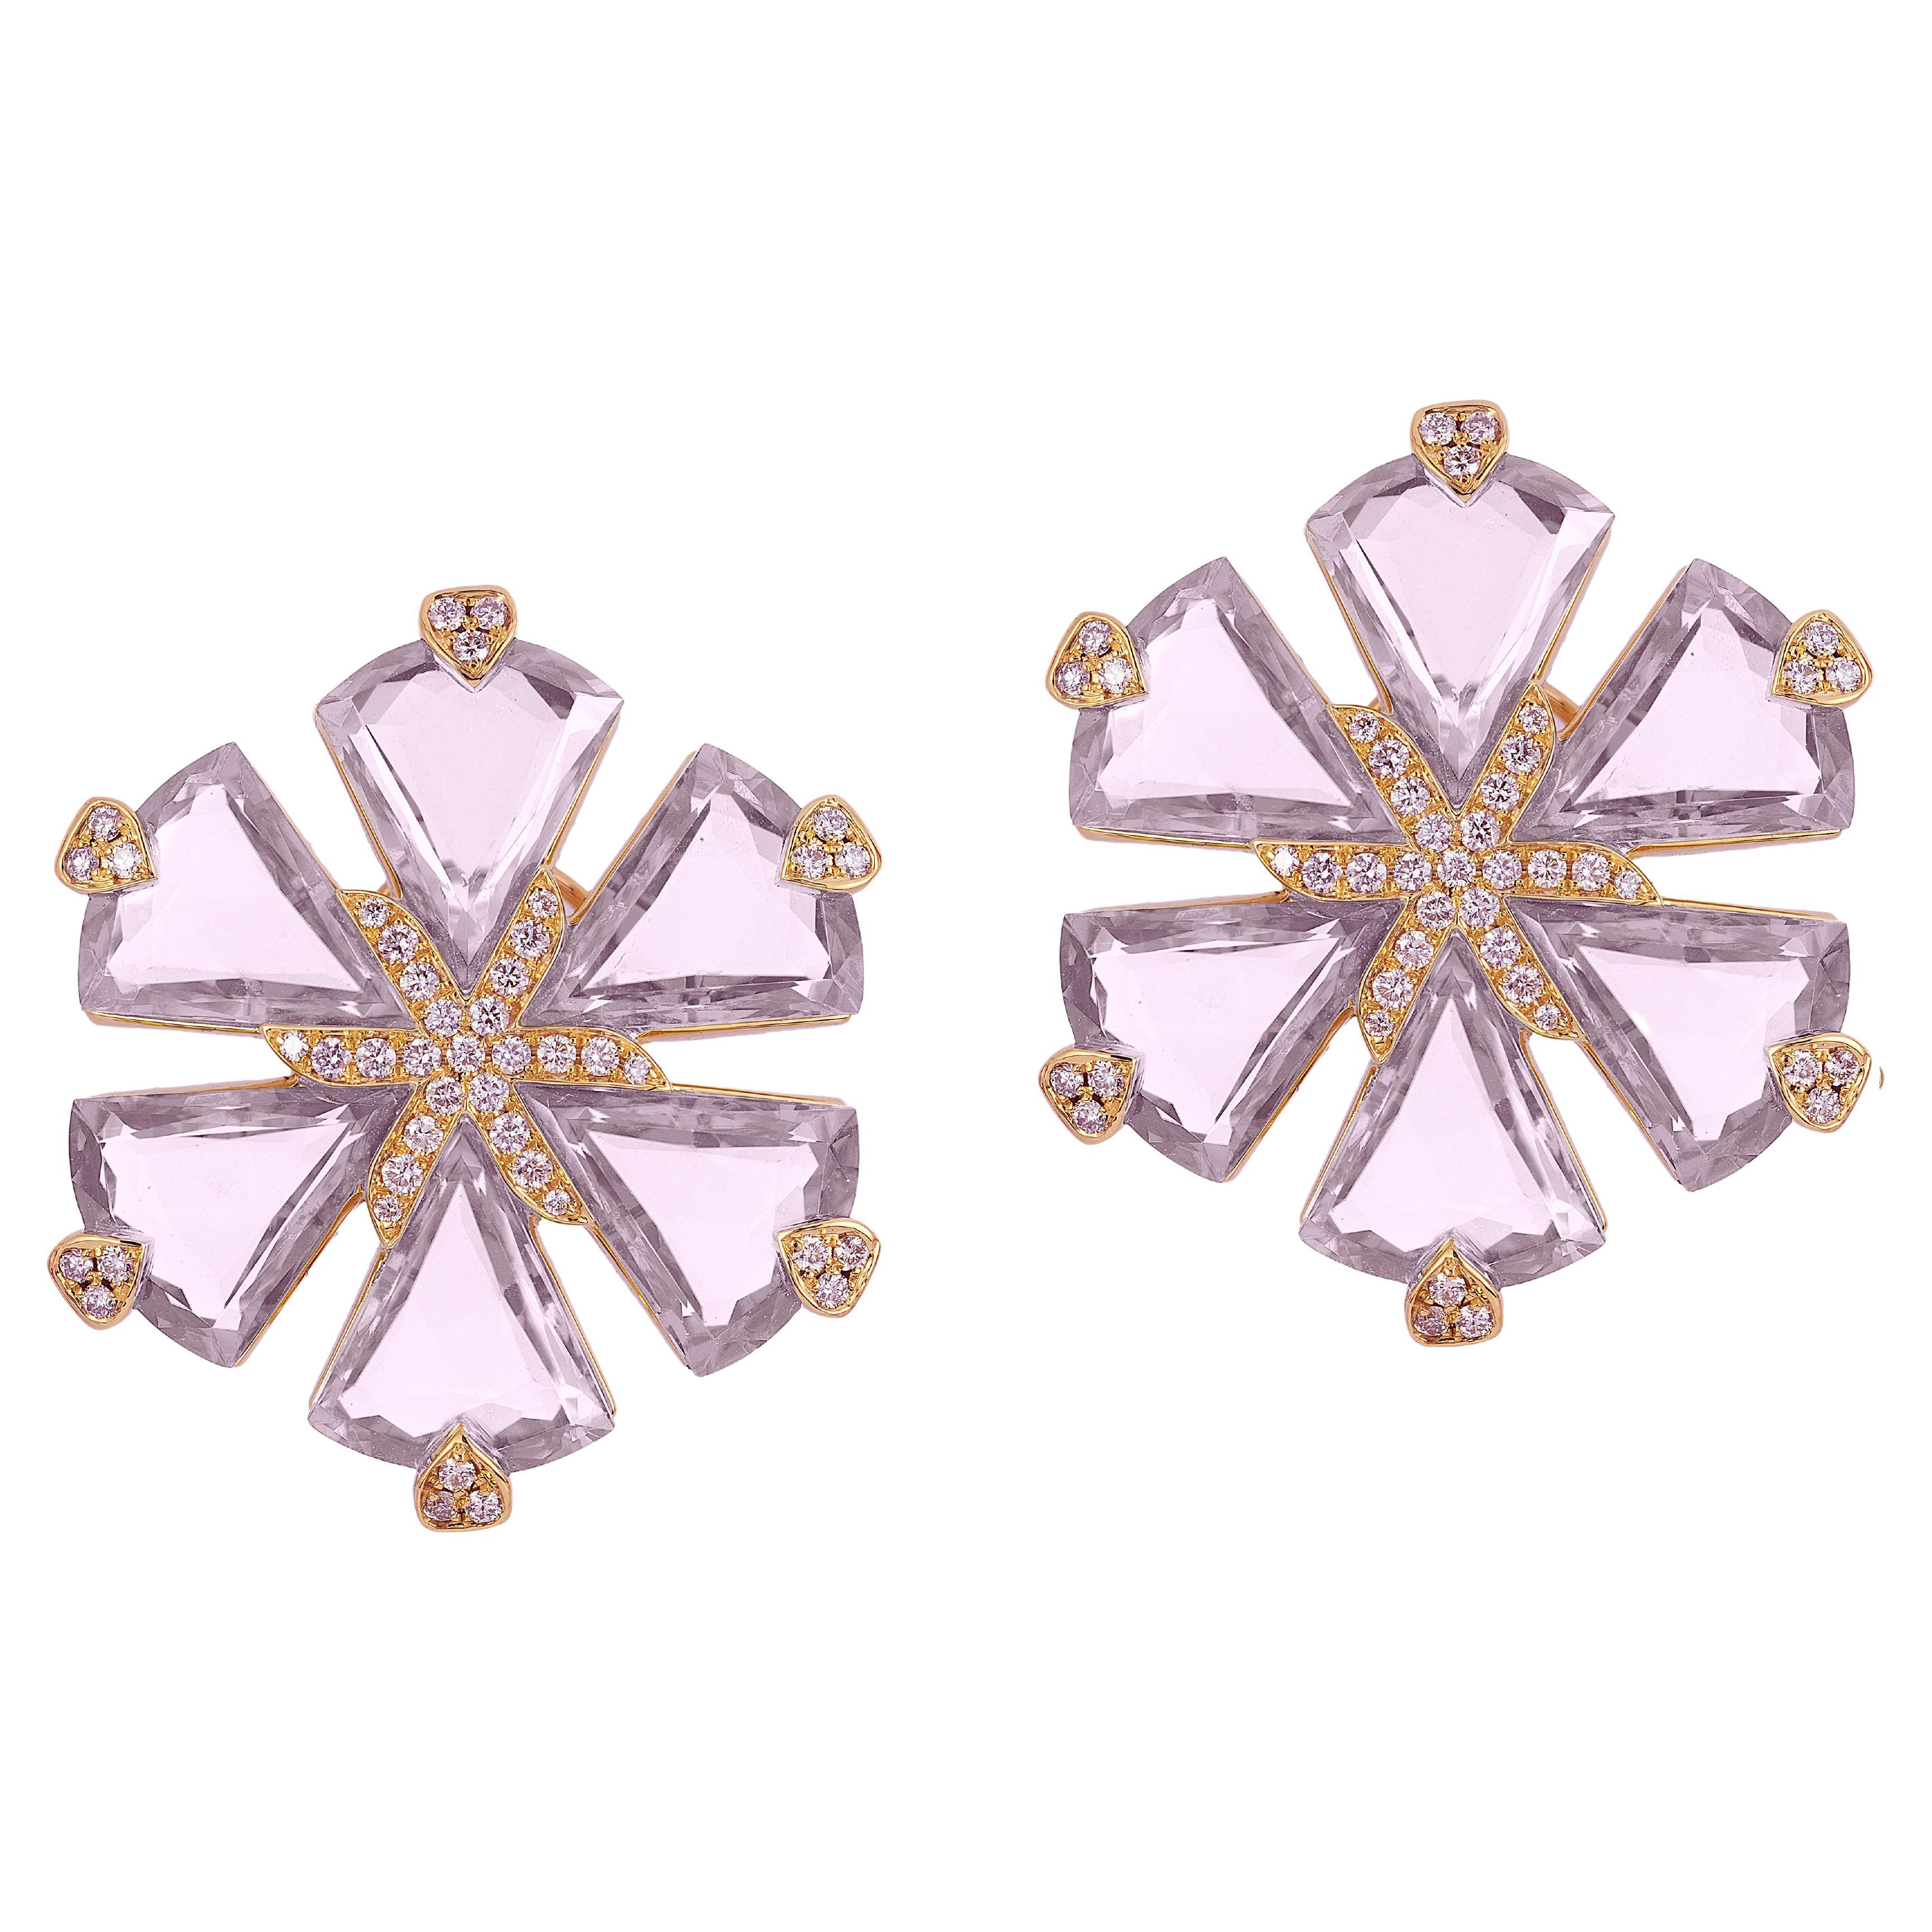 Goshwara Lavender Amethyst Fancy Trillion Flower Diamond Earrings